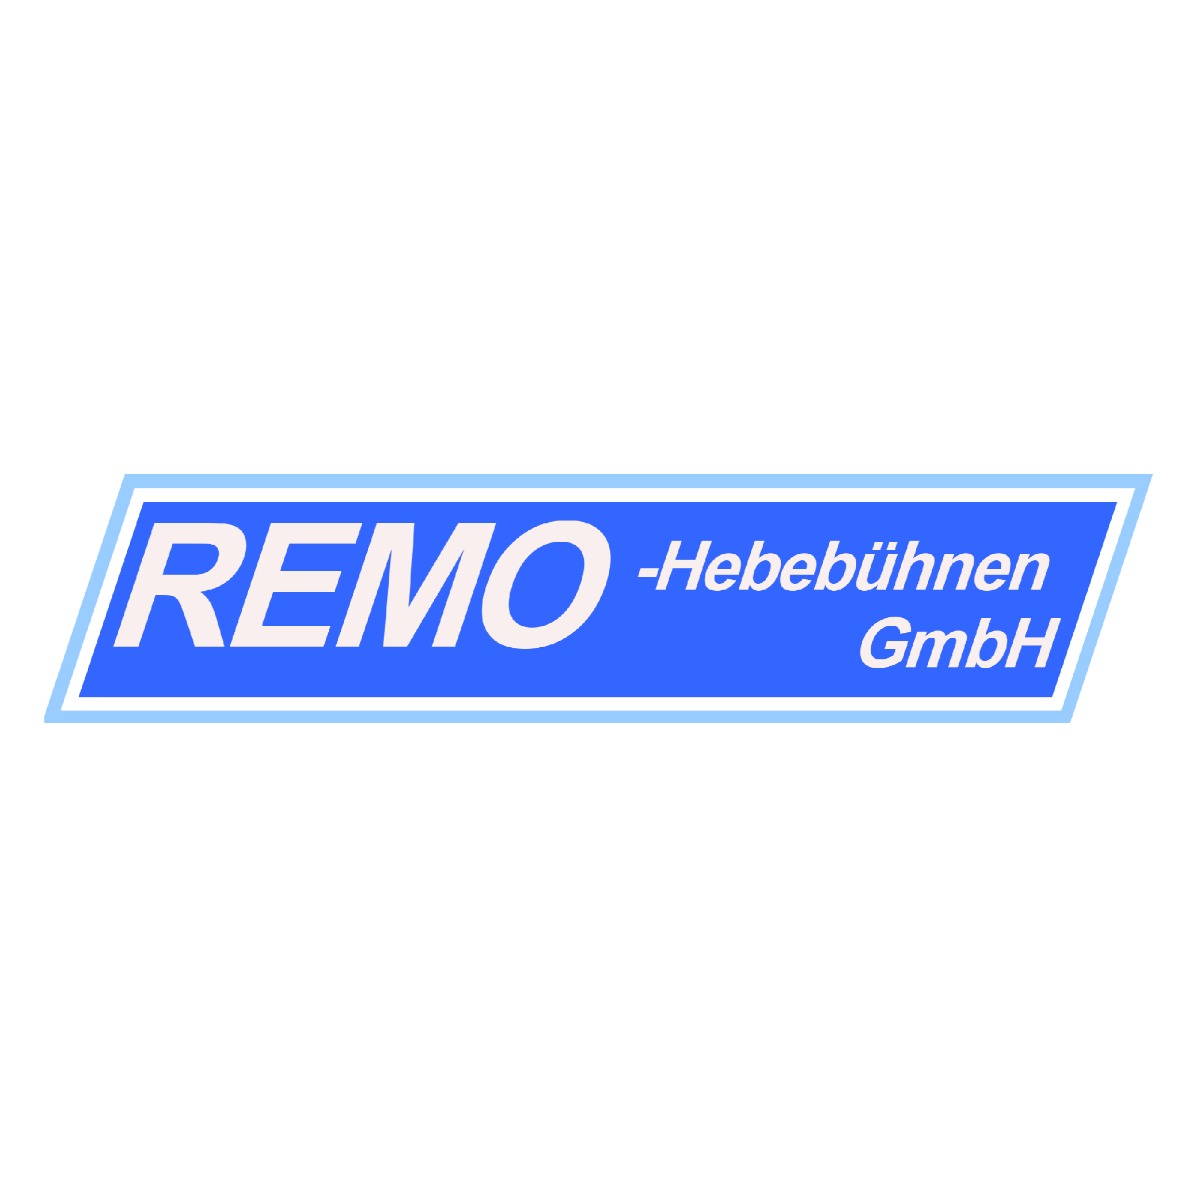 REMO GmbH